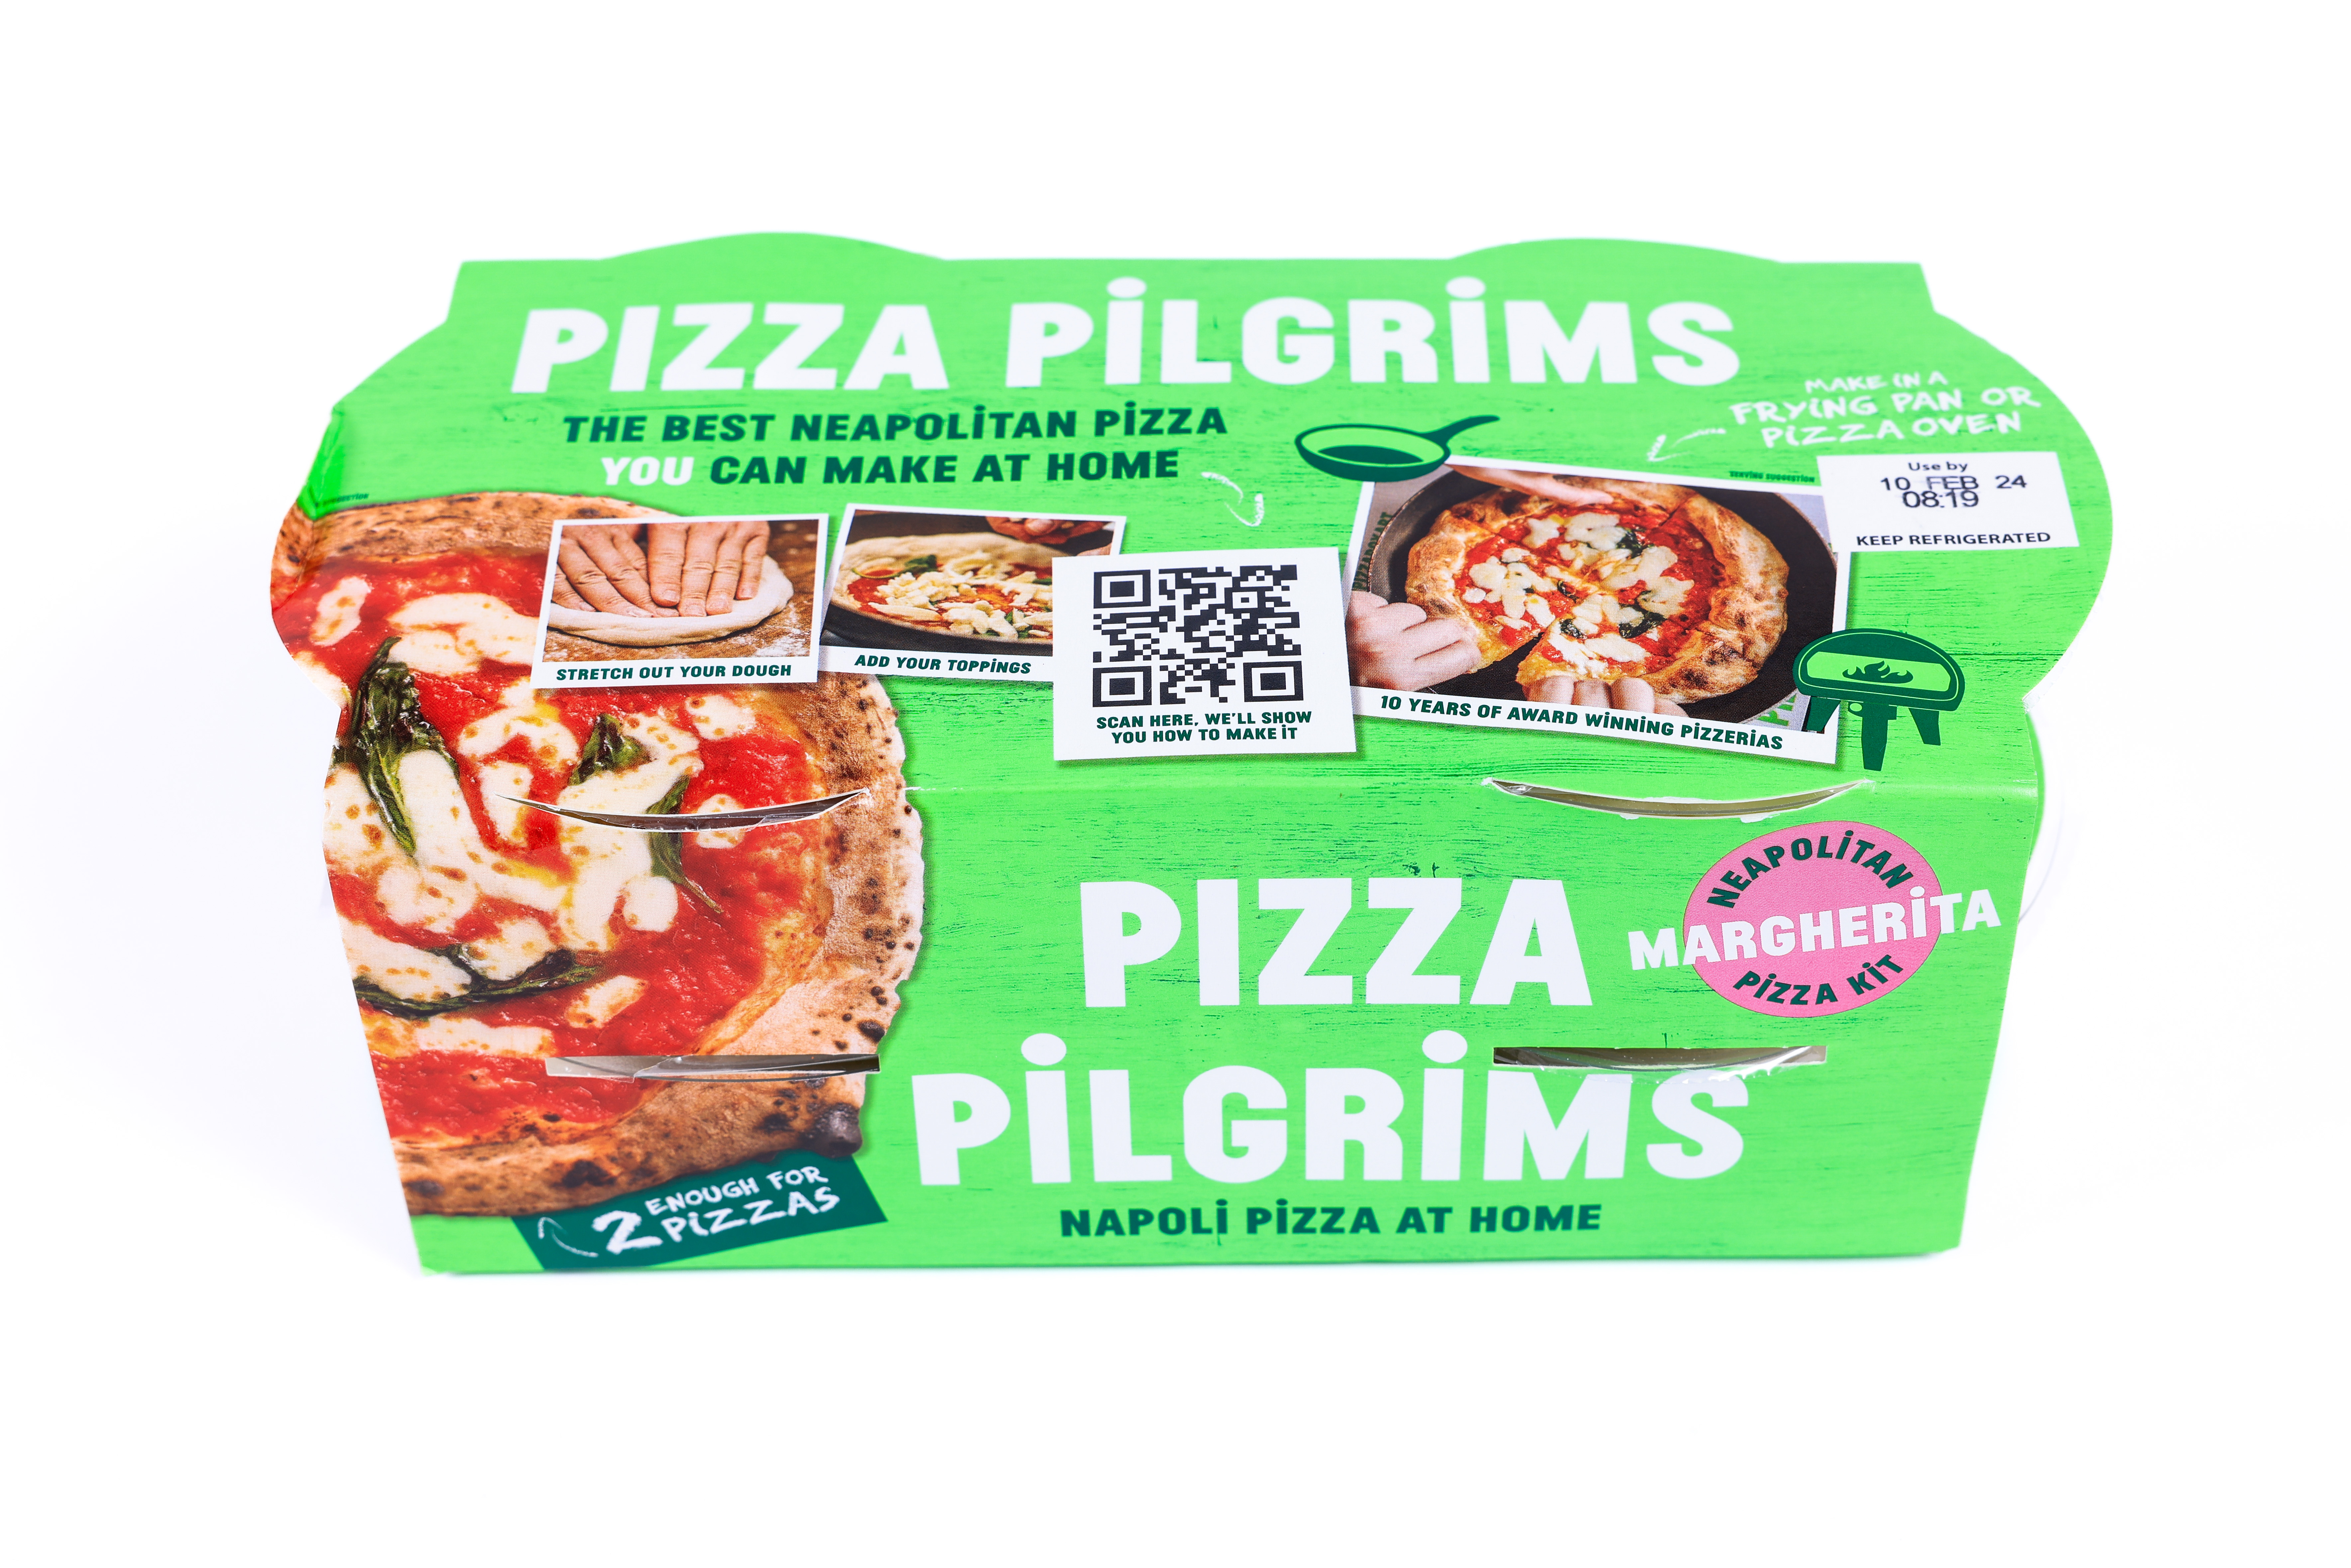 Das Napoli Pizza At Home Kit von Pizza Pilgrims kostet 7,50 £ bei ocado.com